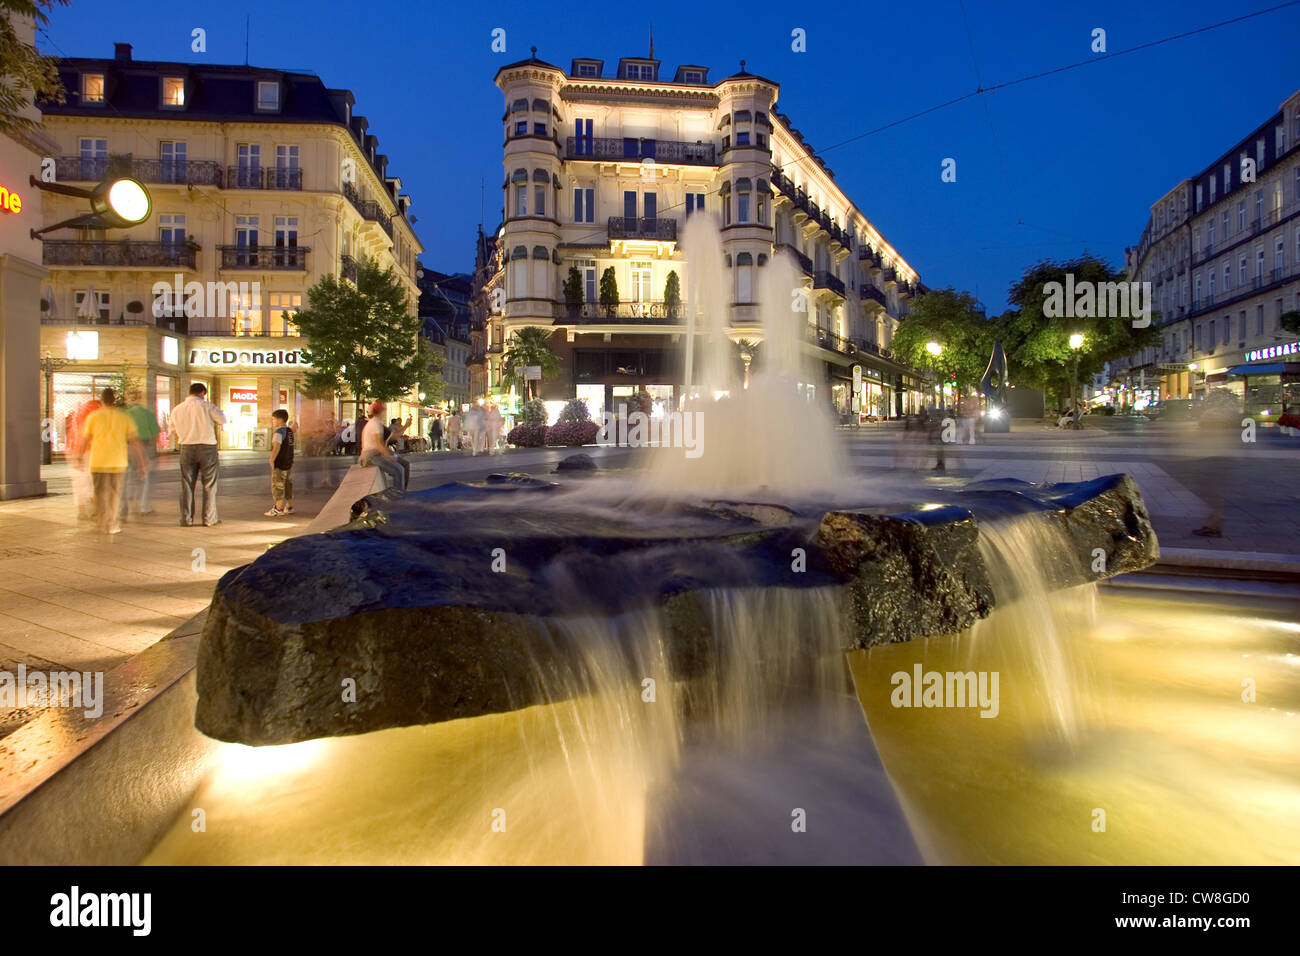 Baden-Baden, mit Blick auf die Leopold-Platz im Zentrum Stadt in der Nacht Stockfoto